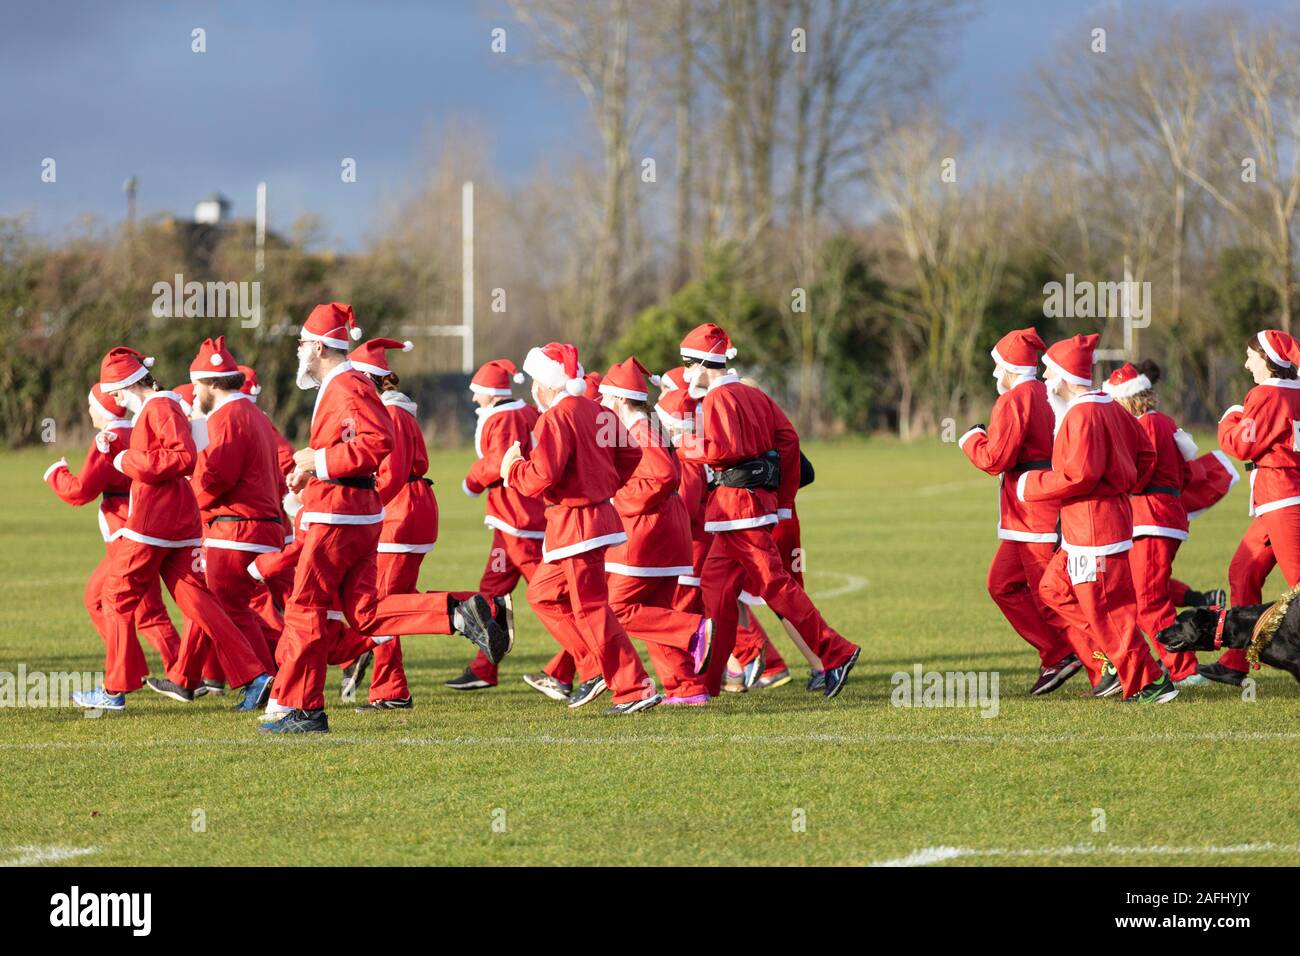 Oxfordshire, UK - 14. Dezember 2019: Verkleidet als Weihnachtsmann nehmen Sie Teil an den jährlichen santa Fun Run. Stockfoto